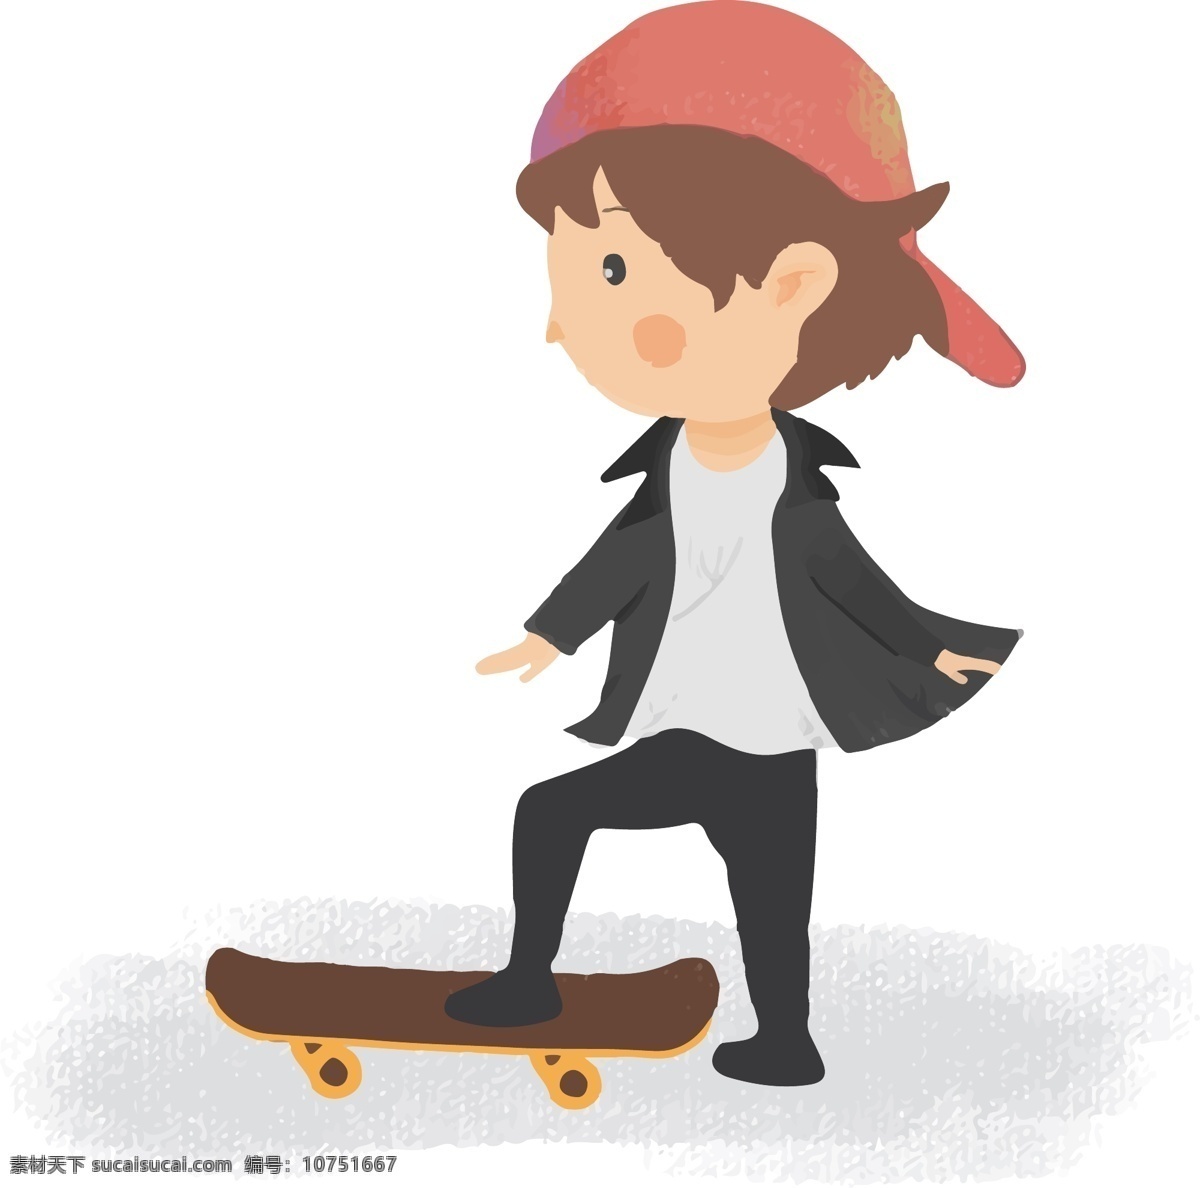 卡通 插 画风 滑板 小 男孩 免 抠 小男孩 酷 酷酷男孩 滑板少年 运动 街头运动 头巾 滑板男孩 男孩滑板 酷炫 炫酷 个性 滑板运动